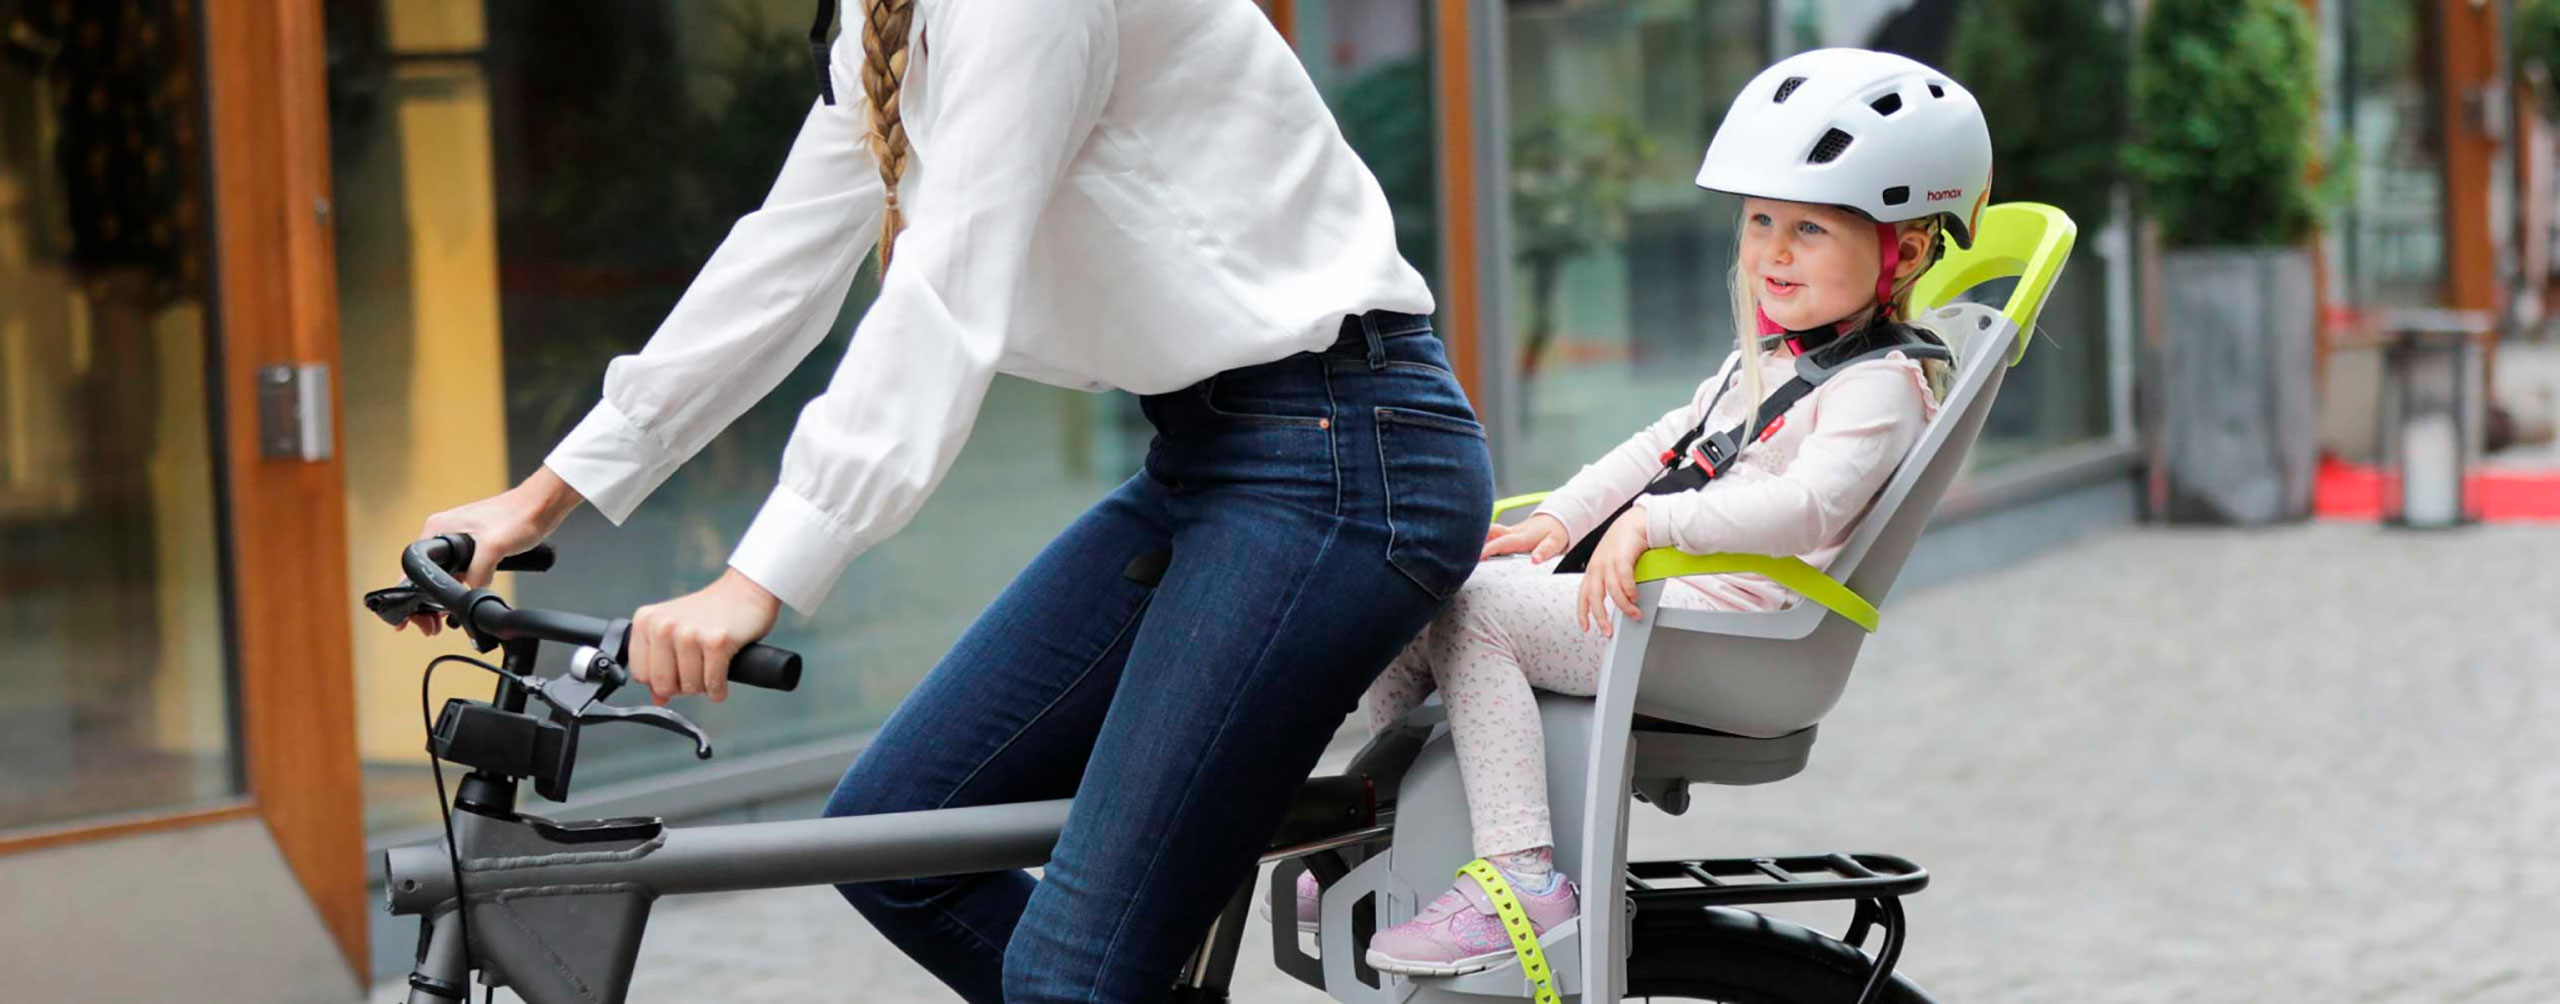 Как правильно выбрать детское велокресло: несколько полезных советов